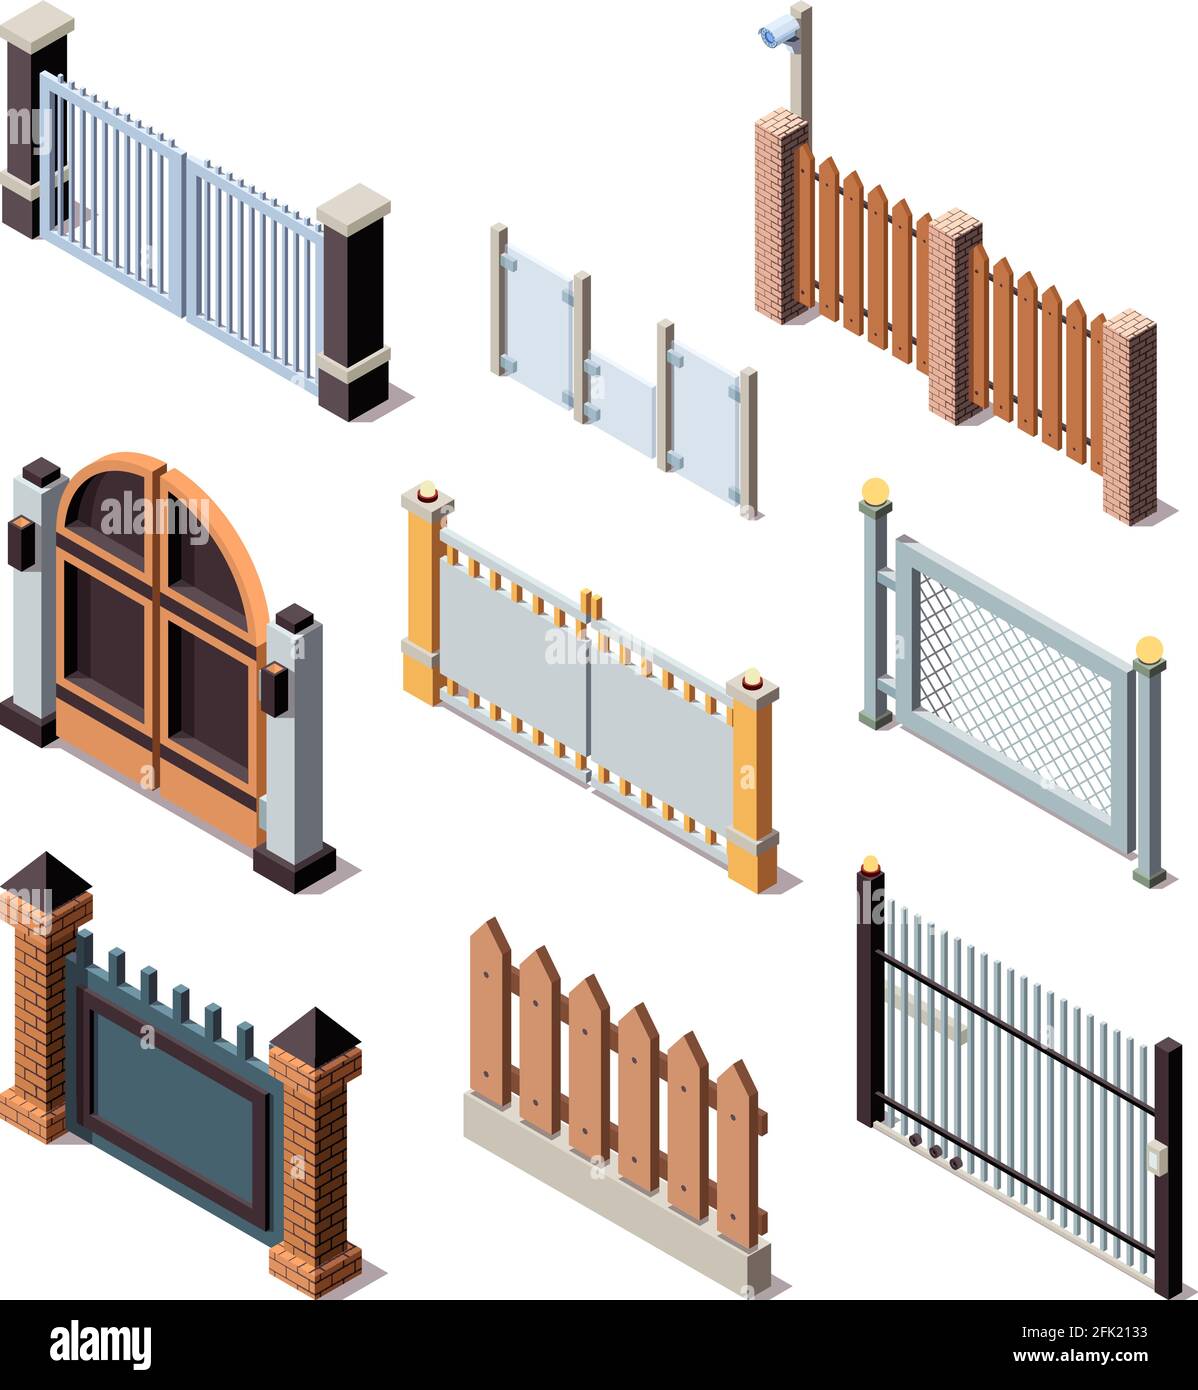 Construction fences. Garden door gate metals or wooden panels railing fences vector isometric Stock Vector